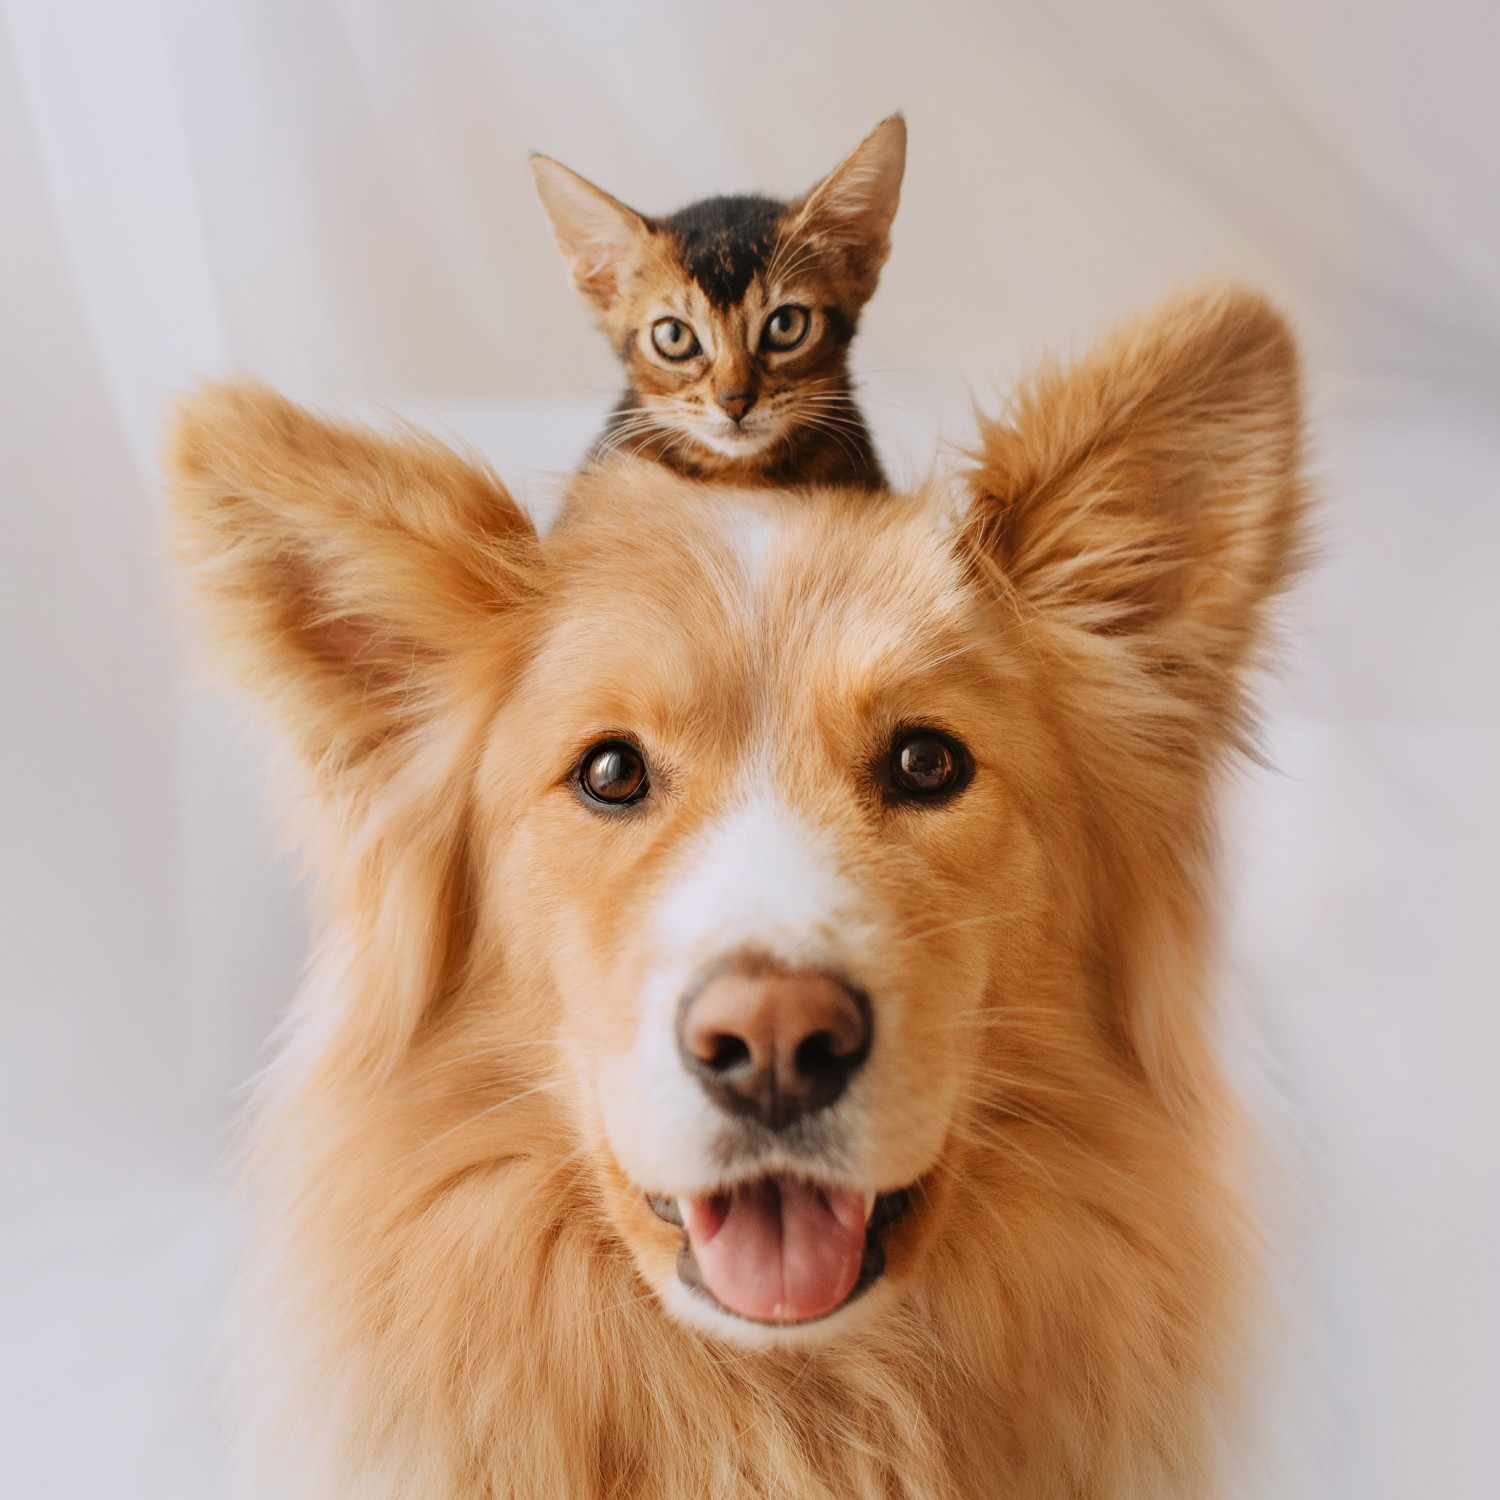 Puppy Kitten Care